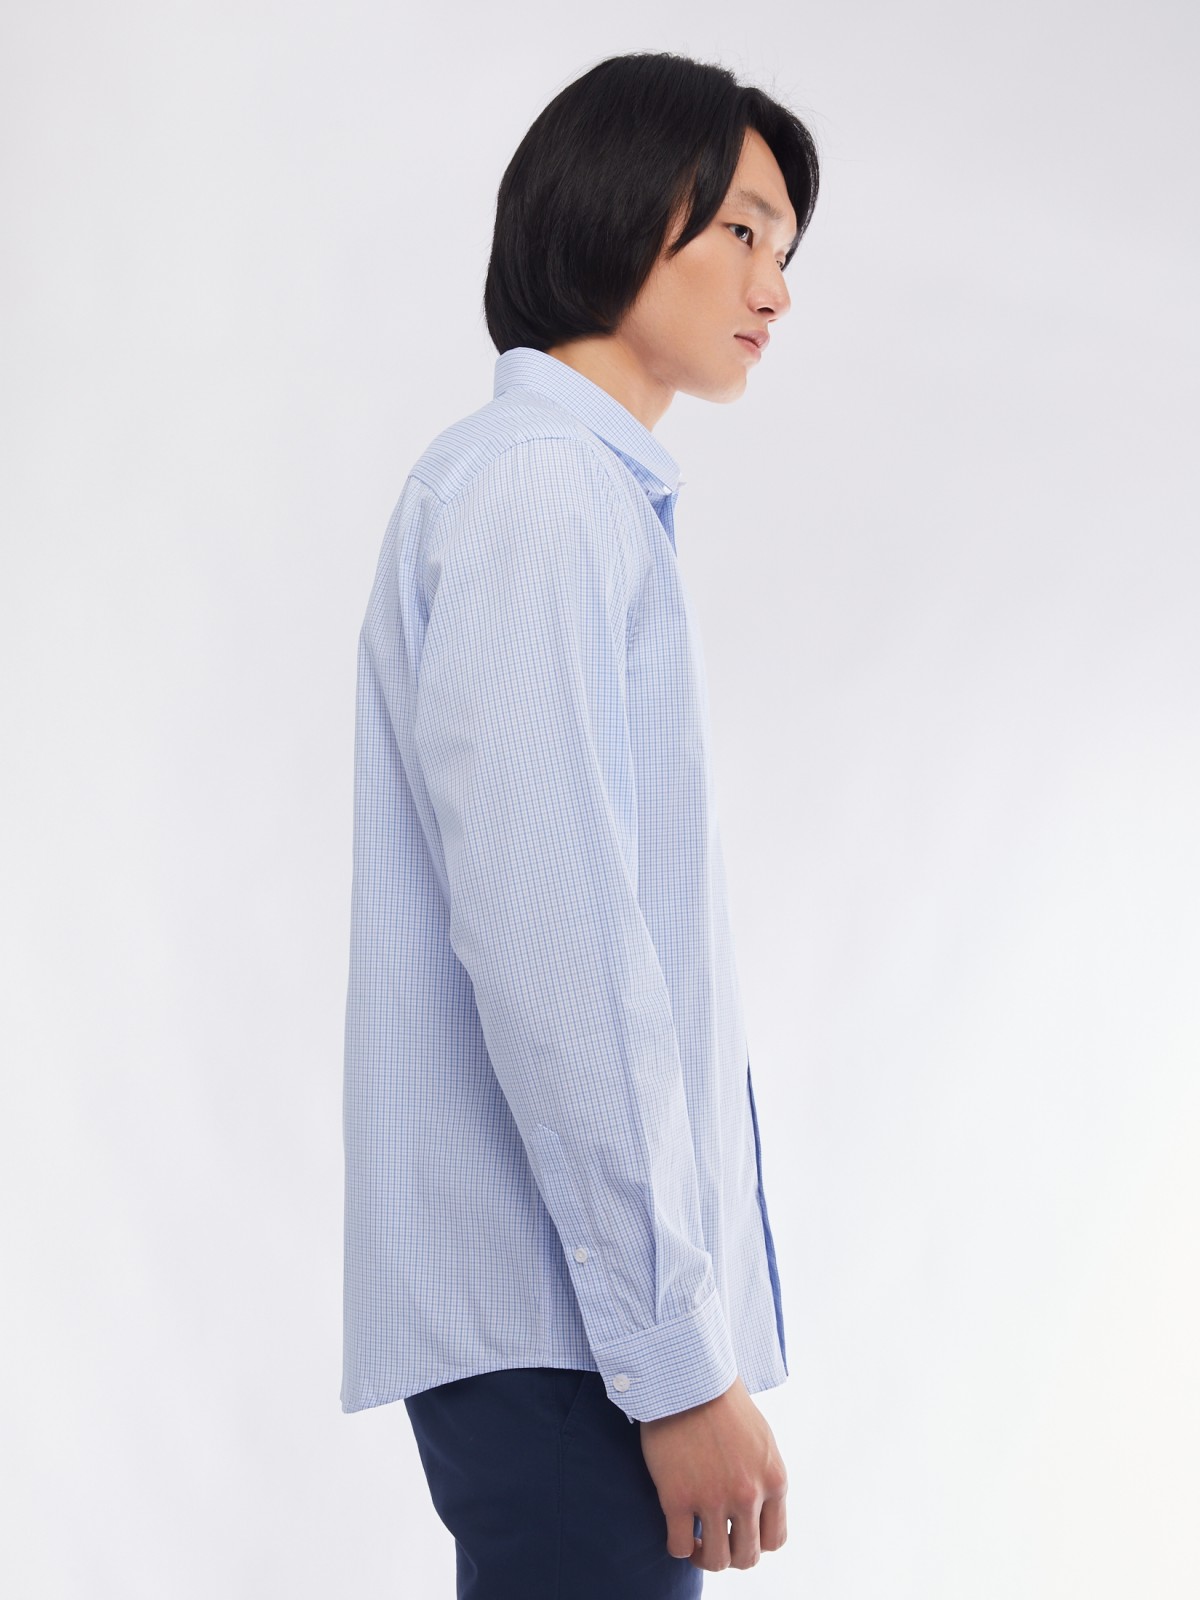 Офисная рубашка прямого силуэта с узором в клетку zolla 014112159062, цвет светло-голубой, размер M - фото 5